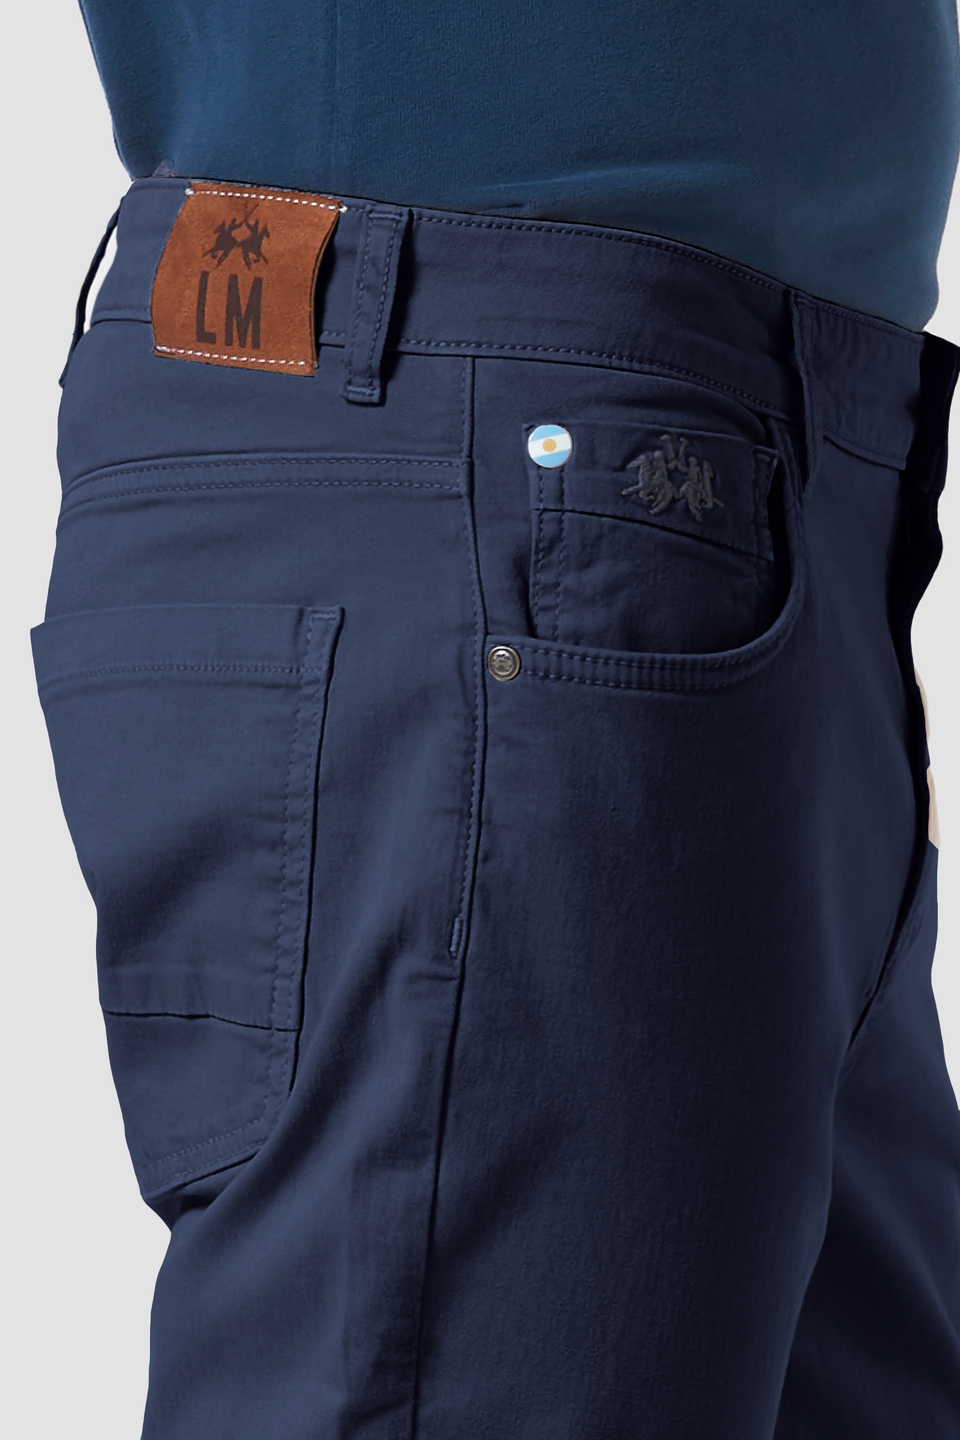 5-pocket stretch cotton trousers | La Martina - Official Online Shop